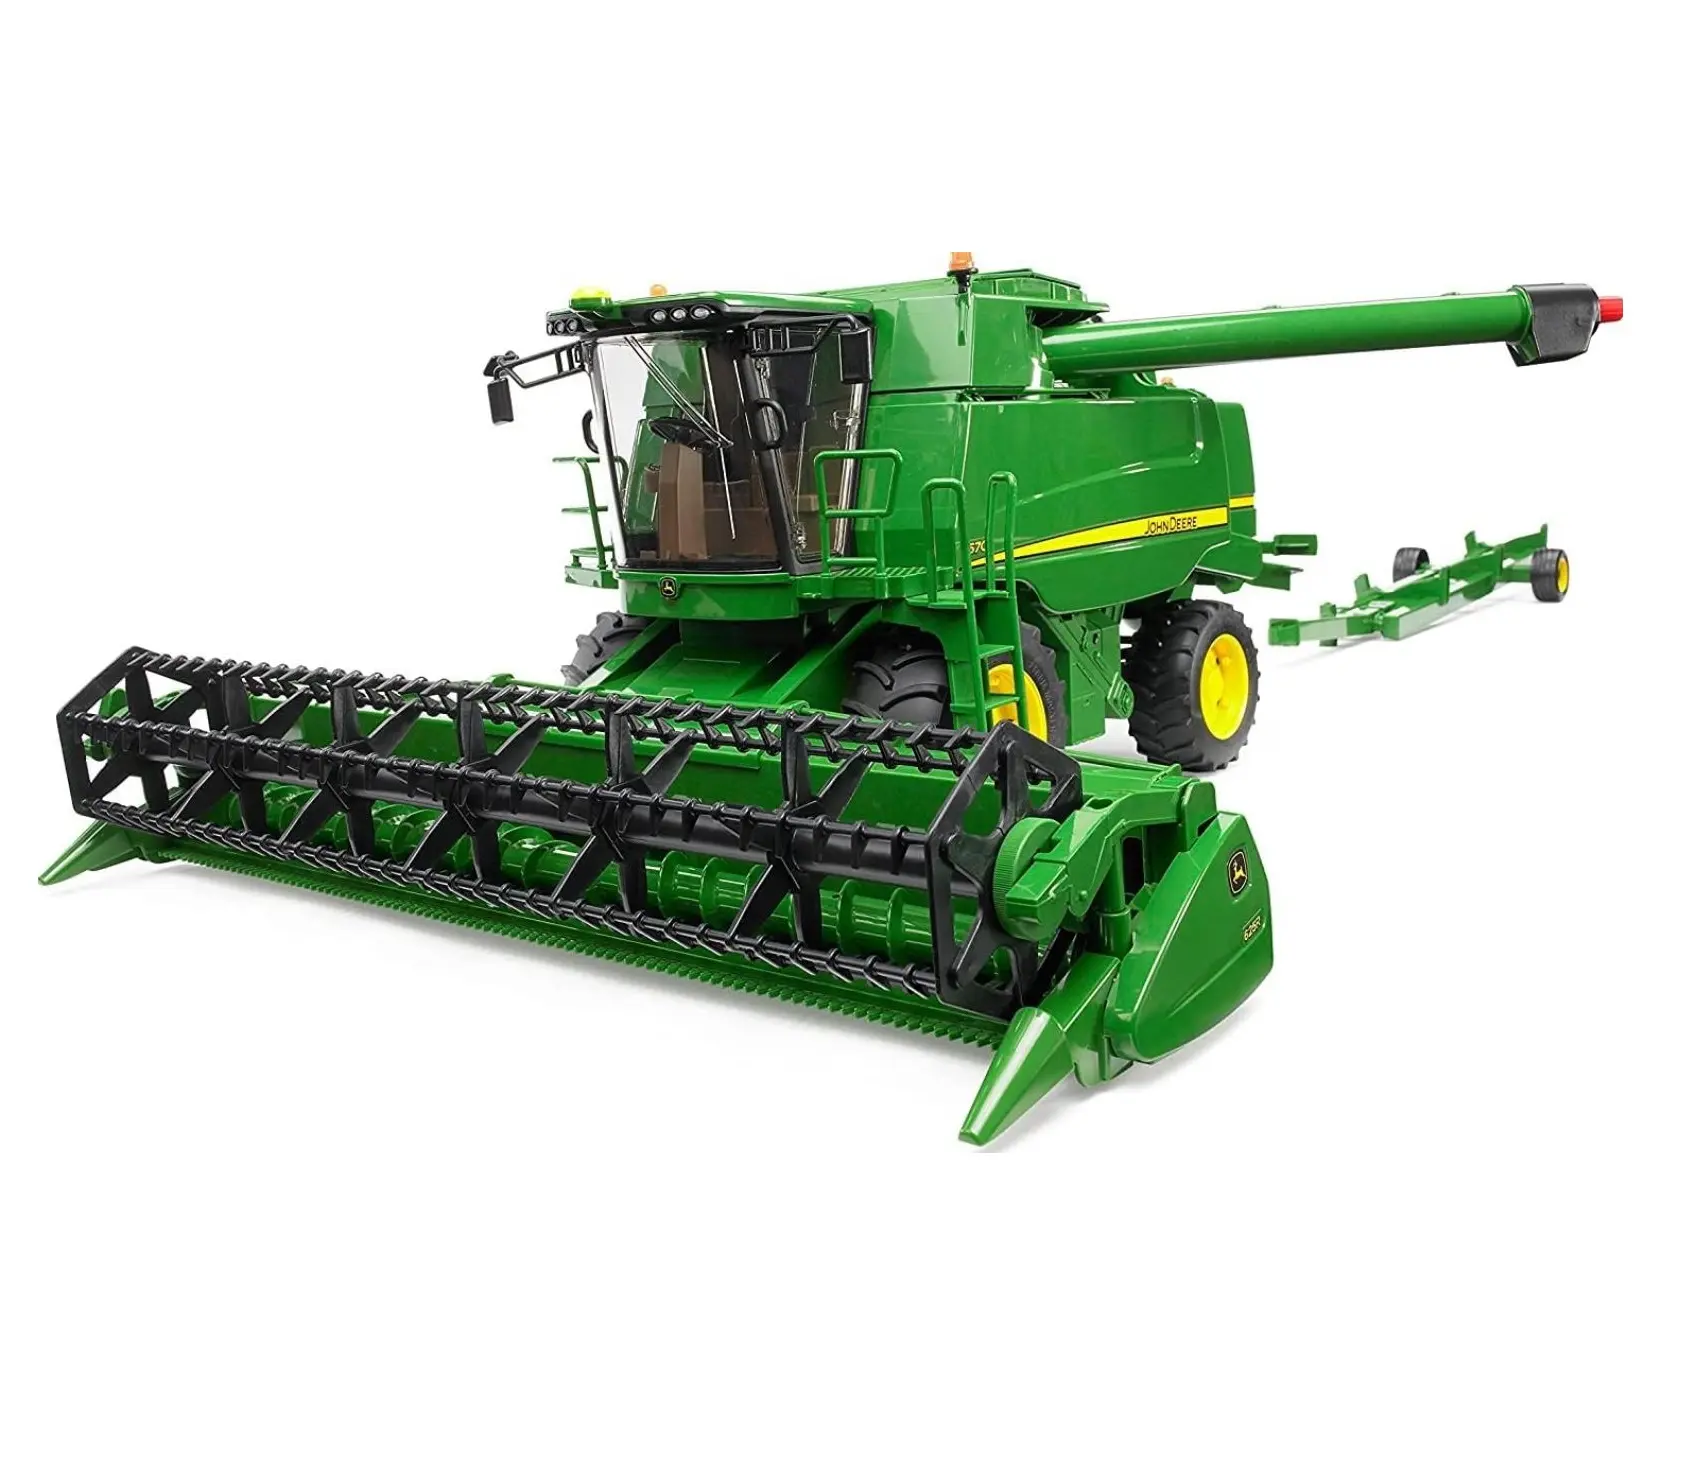 ماكينة الحصاد المدمجة JOHN DEERE S690 المستخدمة إلى حد ما في حالة جيدة دون أي مشاكل وجاهزة للبيع